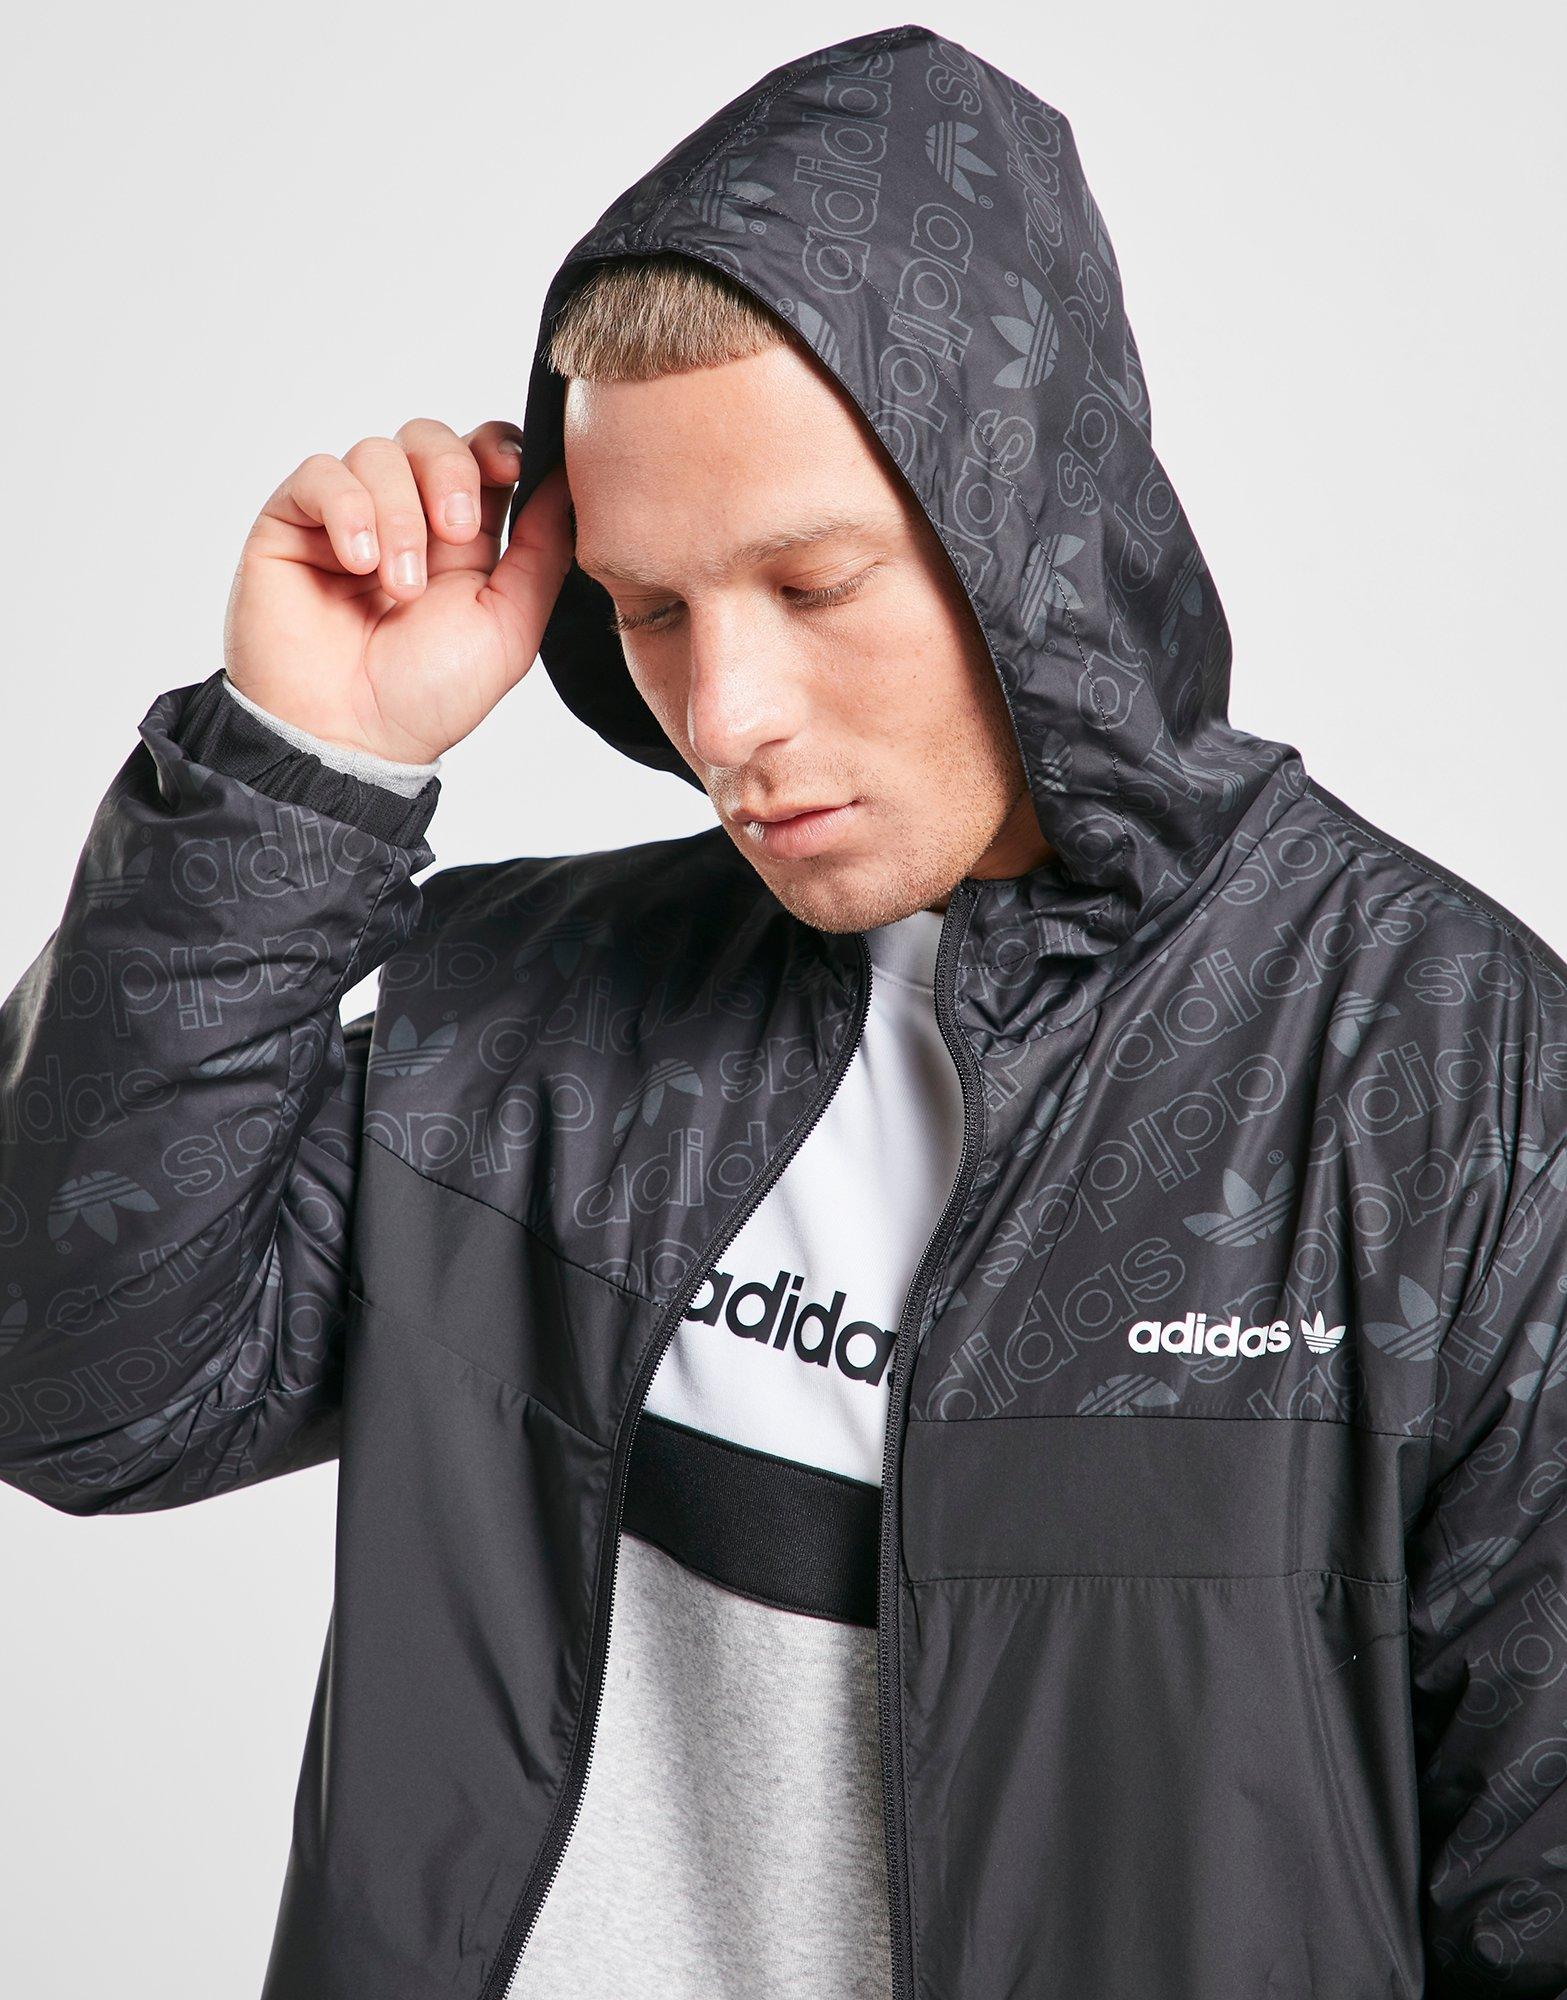 adidas zx jacket